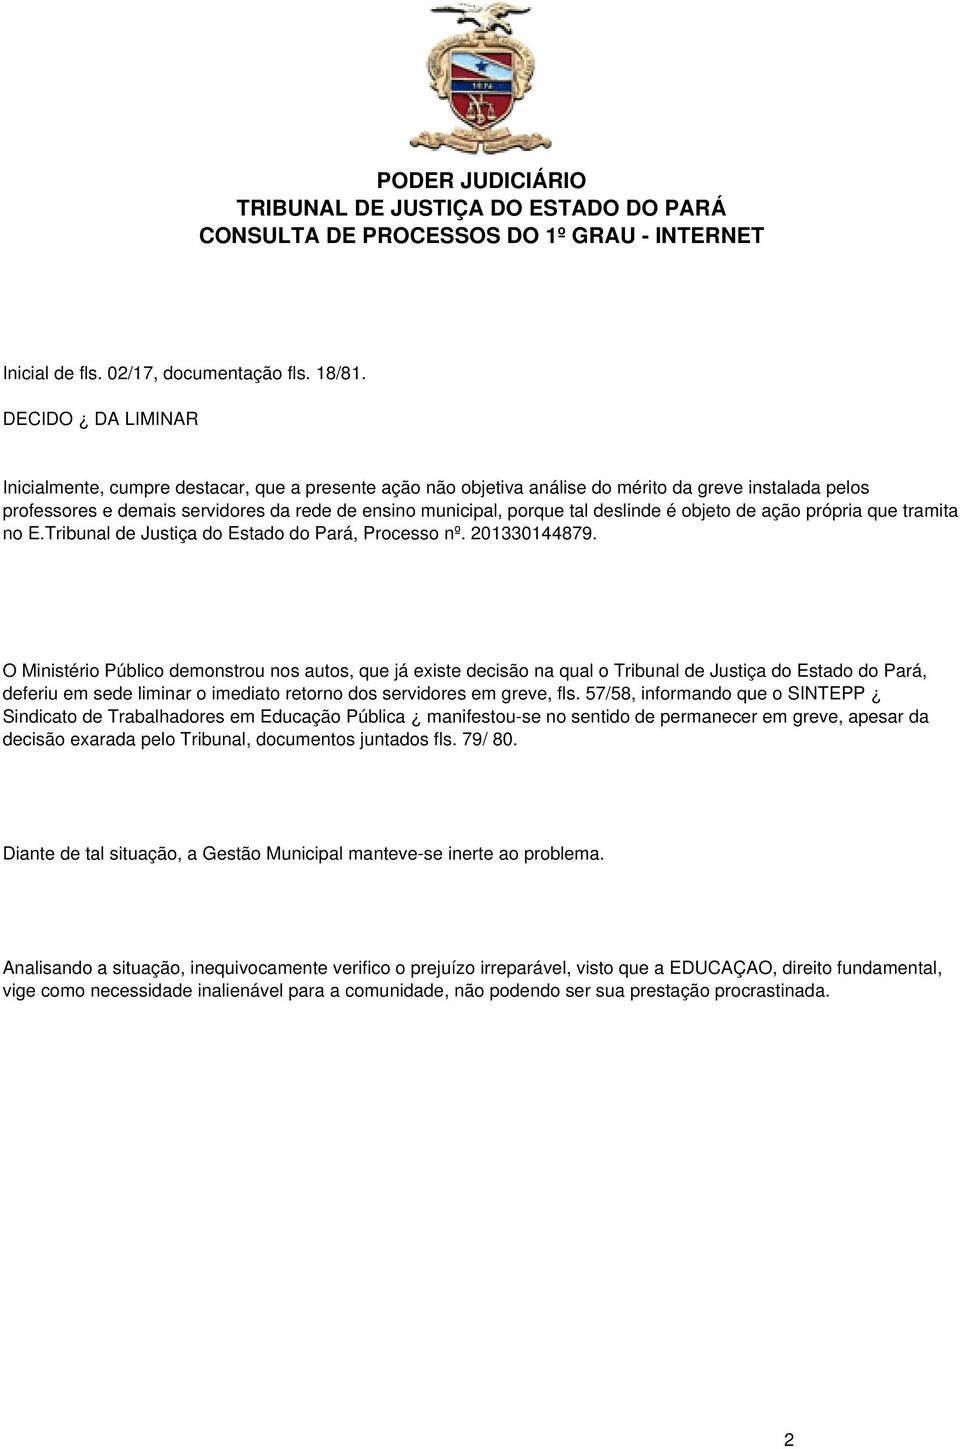 deslinde é objeto de ação própria que tramita no E.Tribunal de Justiça do Estado do Pará, Processo nº. 201330144879.